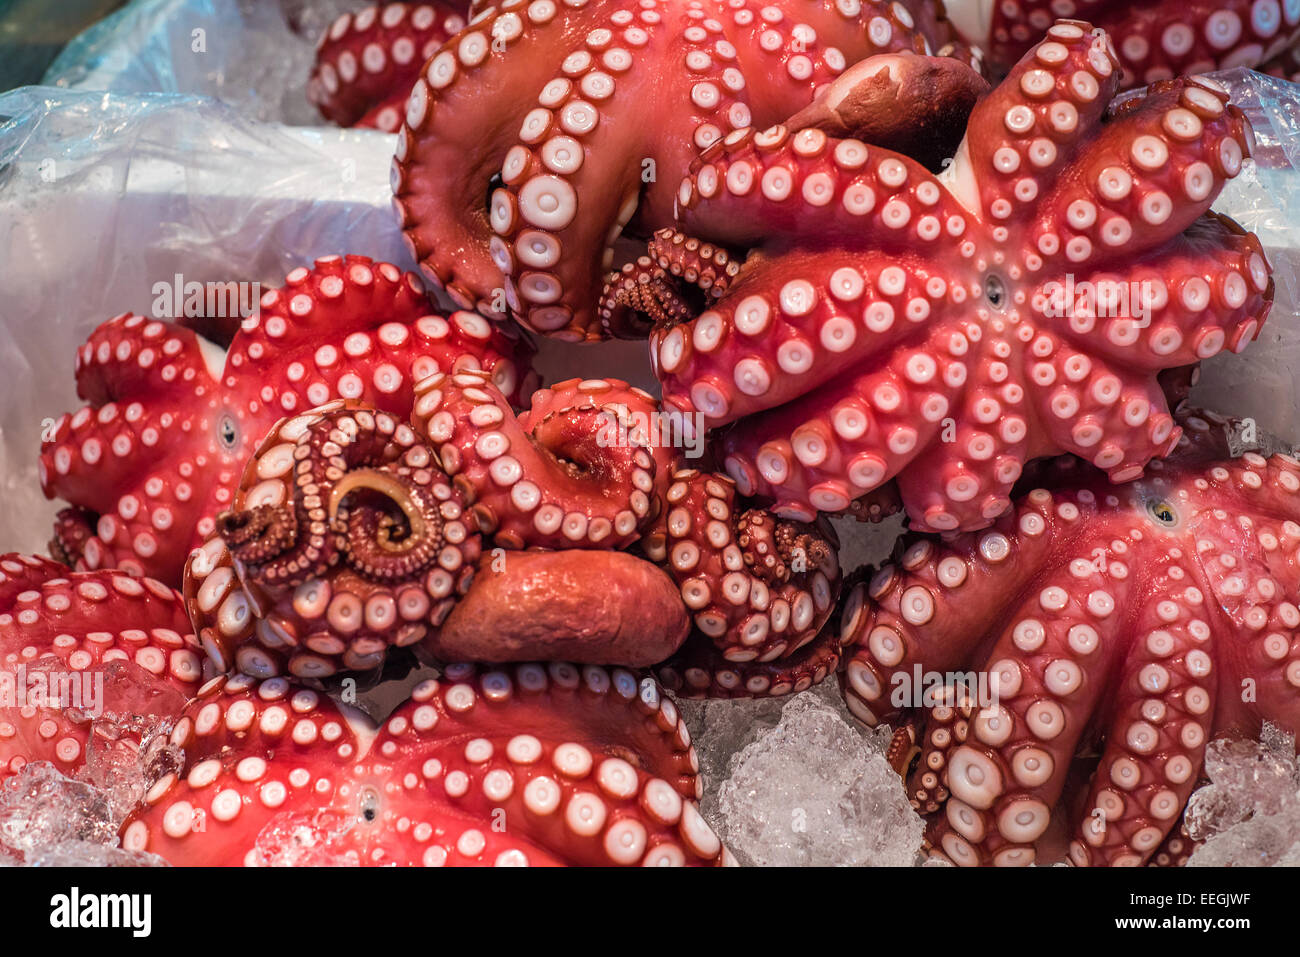 Red live octopus at Tsukiji fish market, Tokyo, Japan Stock Photo